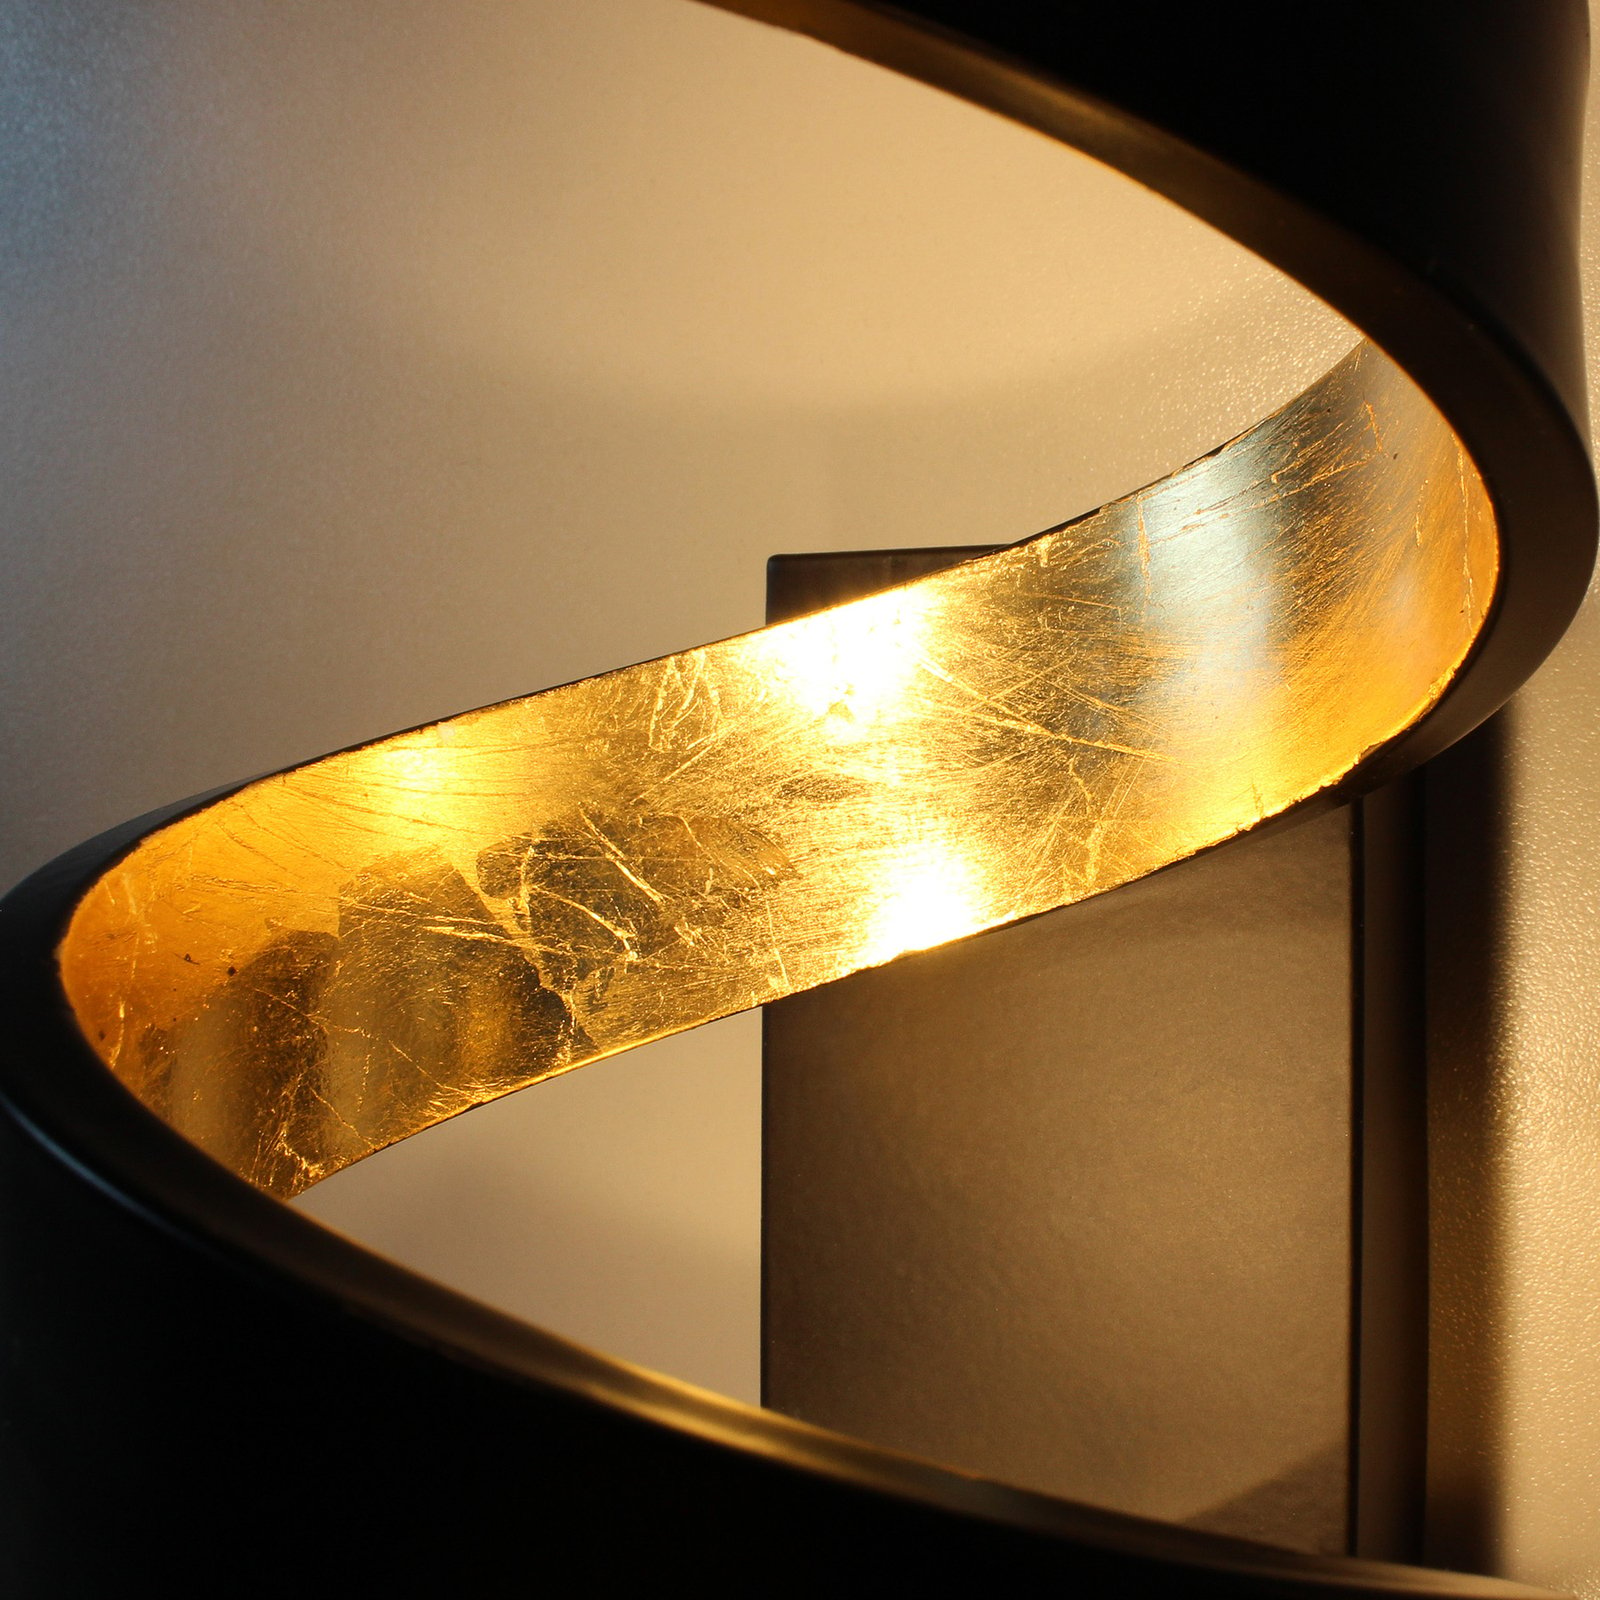 LED nástěnné světlo Helix, černo-zlaté, 17 cm